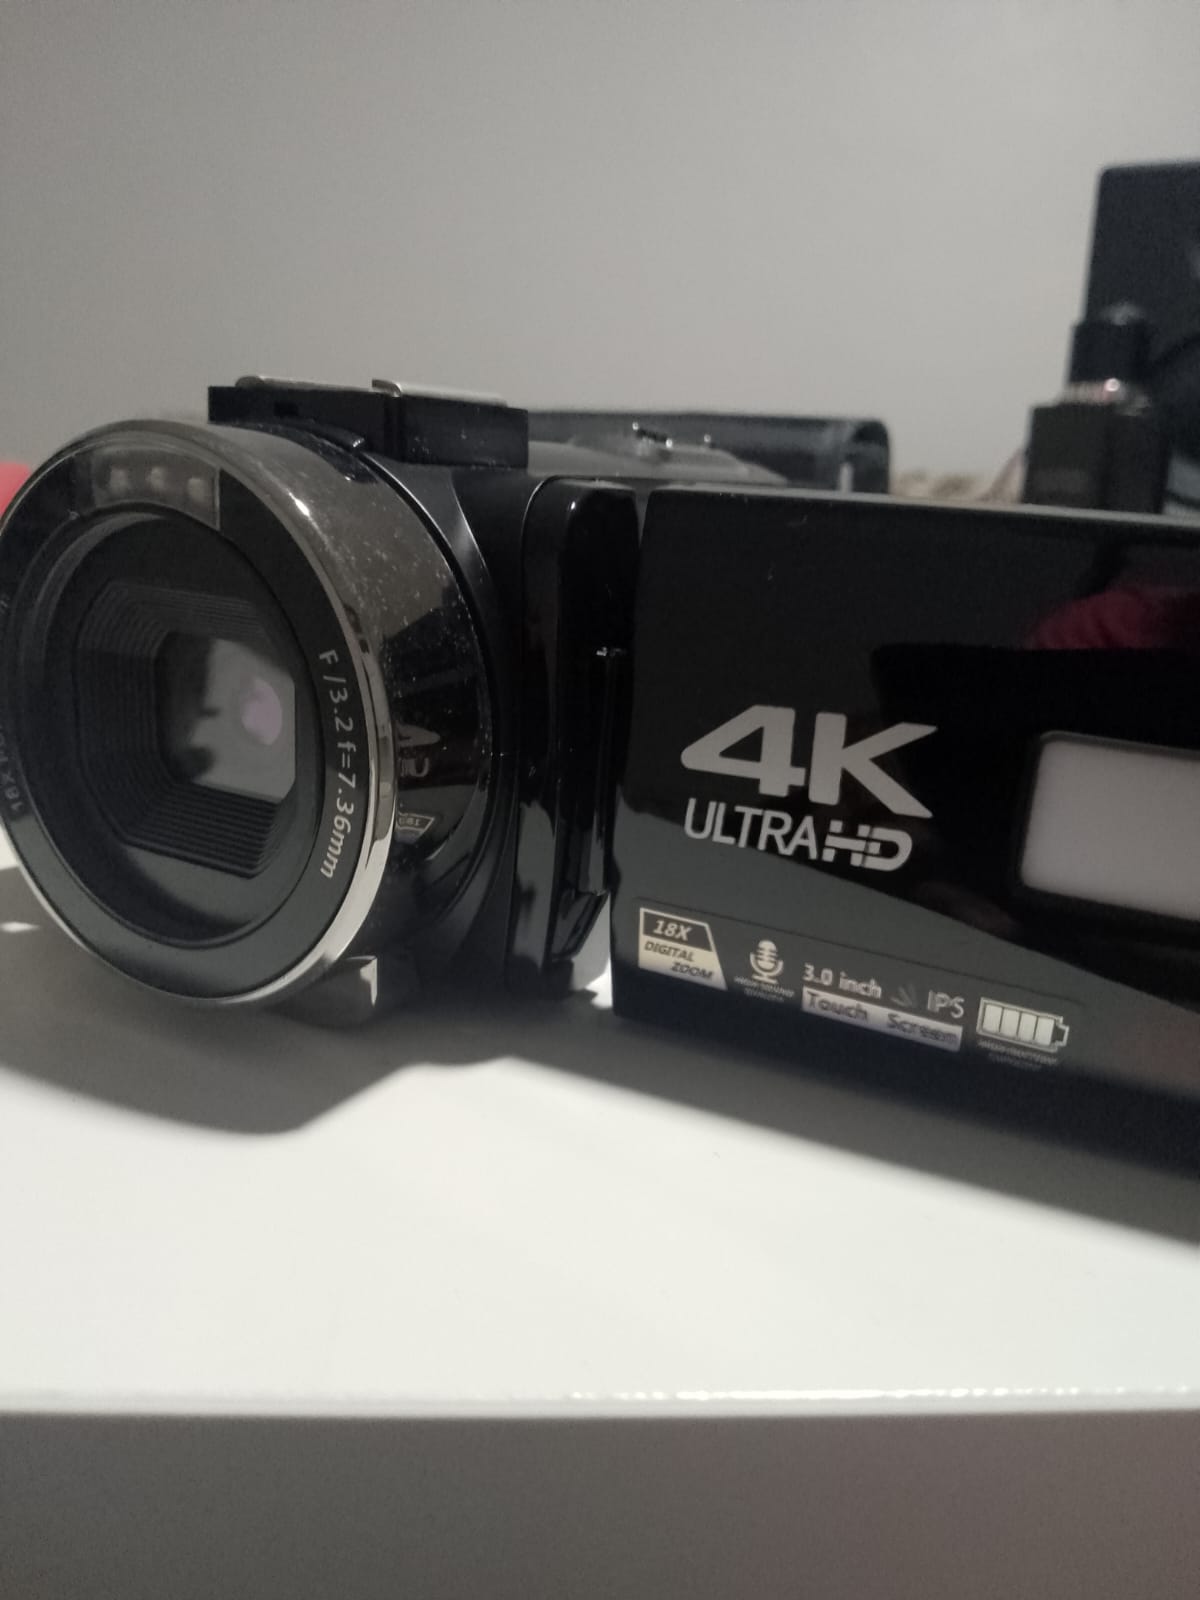 Camara DVC 4k Ultra HD como nueva en su caja Foto 7220340-3.jpg